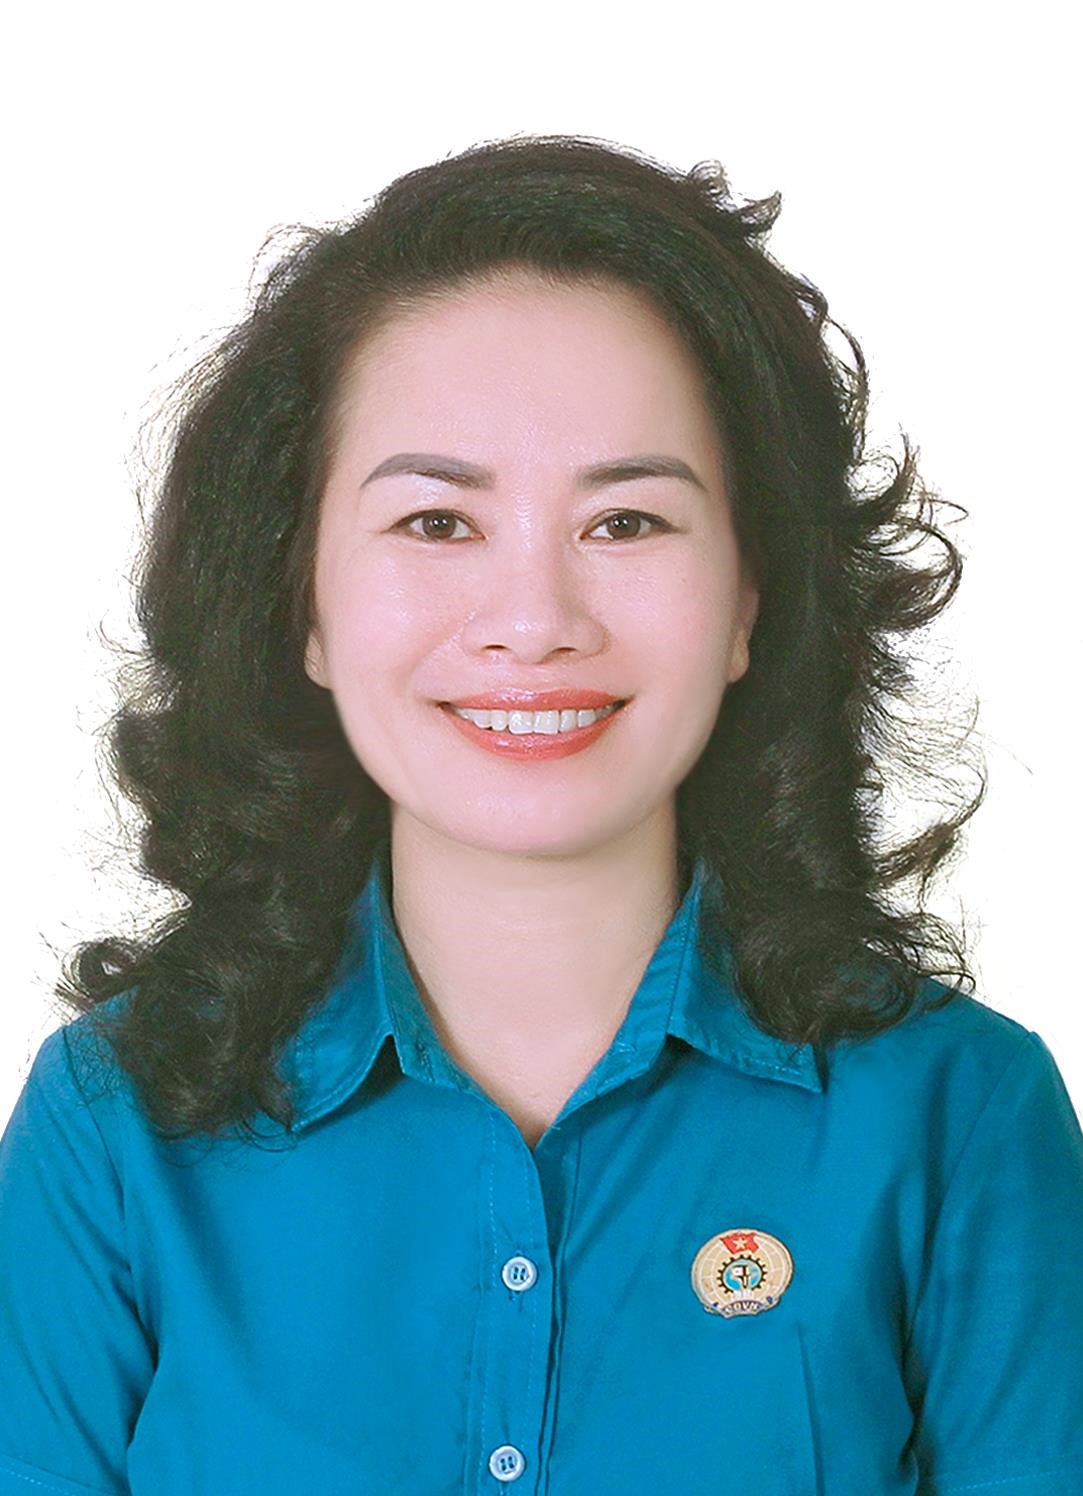 Bà Nguyễn Thị Hương - Chủ tịch Liên đoàn Lao động huyện Vĩnh Bảo. Ảnh: Nhân vật cung cấp